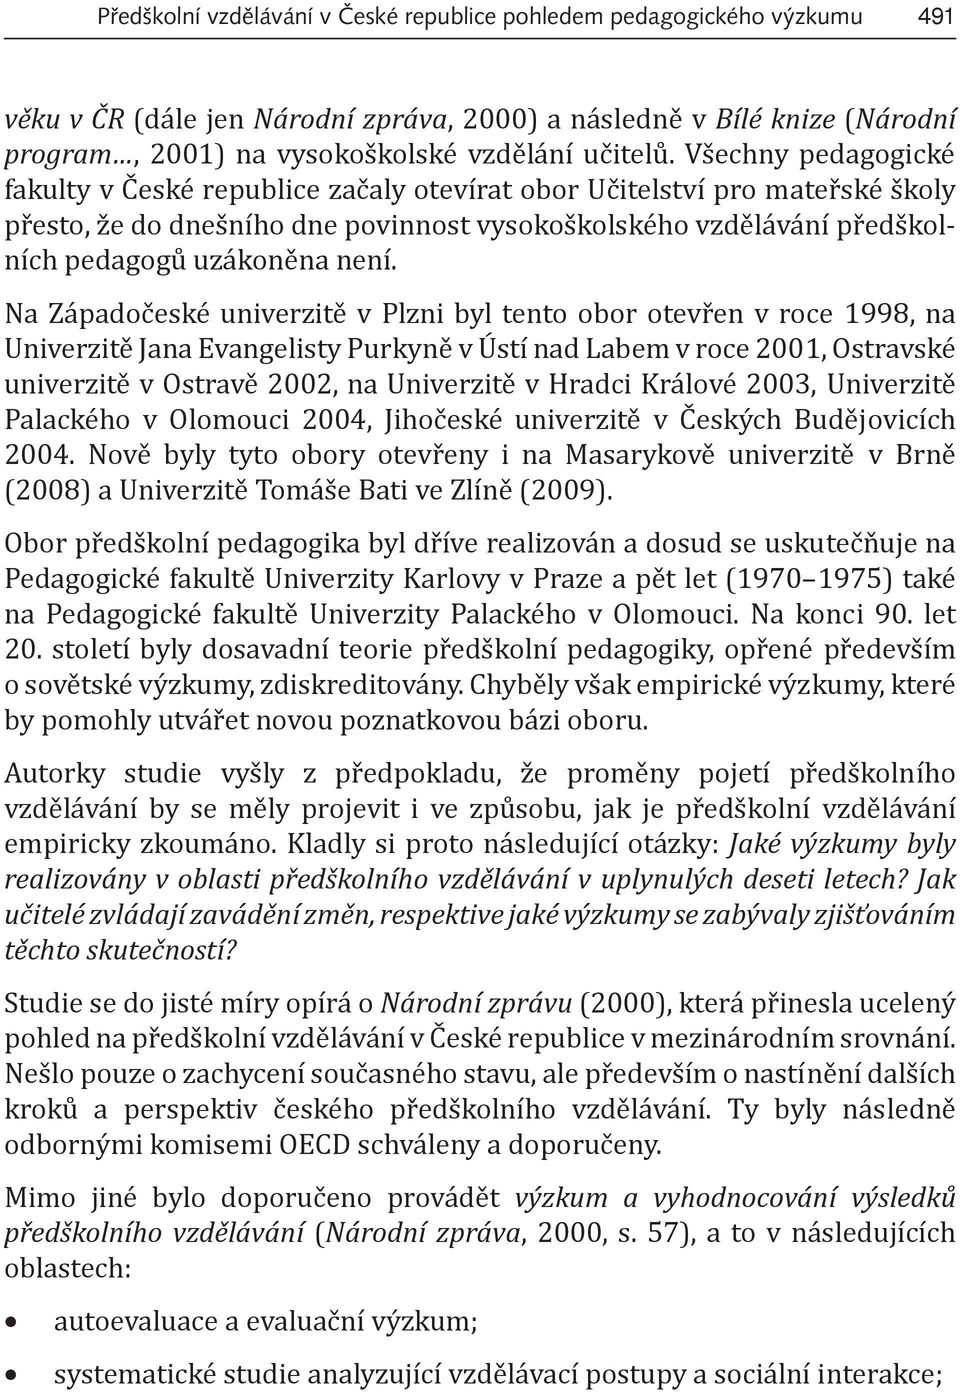 Na Západočeské univerzitě v Plzni byl tento obor otevřen v roce 1998, na Univerzitě Jana Evangelisty Purkyně v Ústí nad Labem v roce 2001, Ostravské univerzitě v Ostravě 2002, na Univerzitě v Hradci